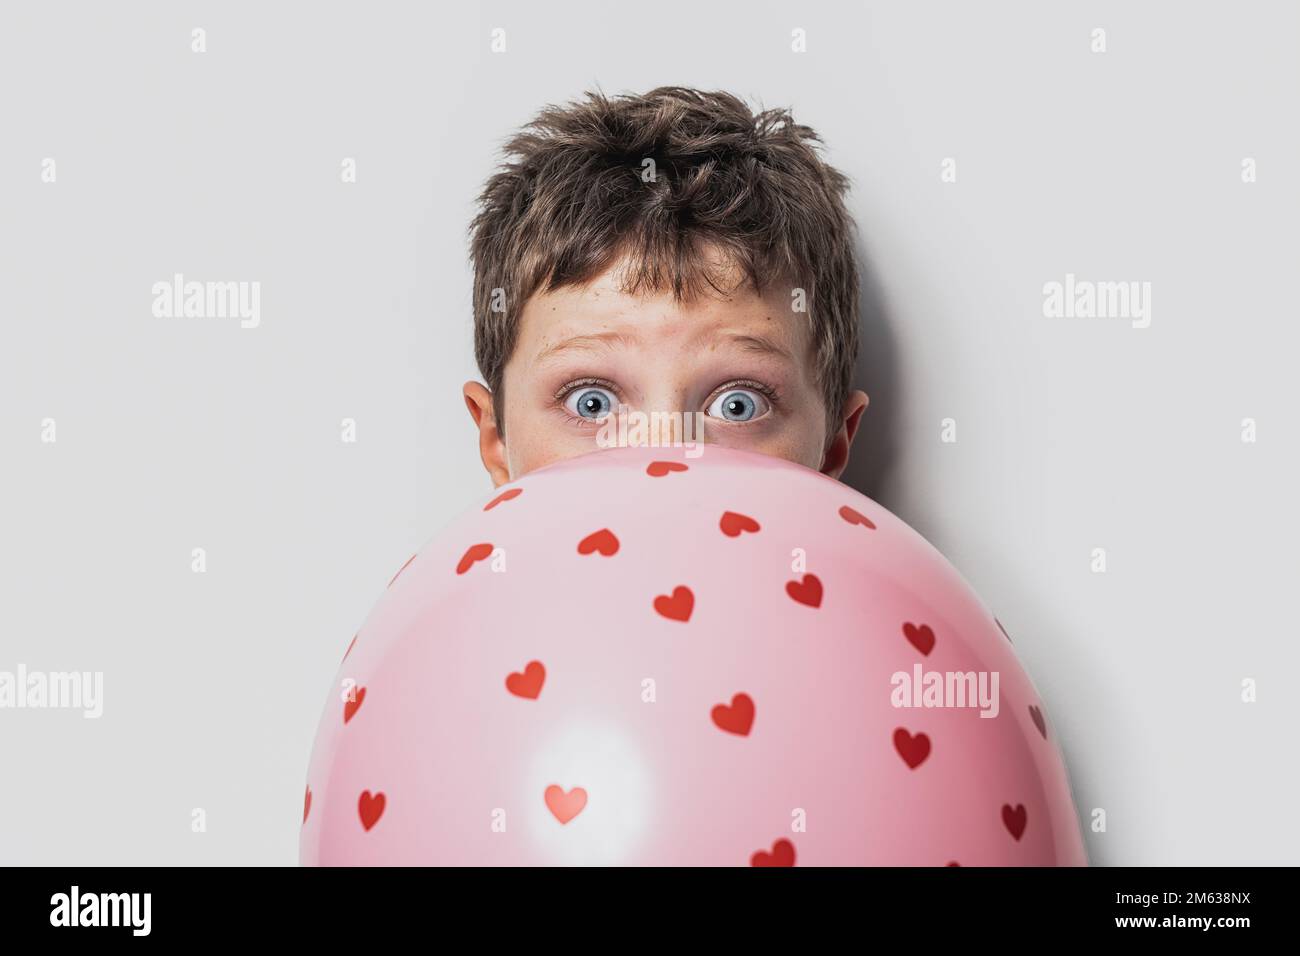 Un joli garçon aux yeux bleus cache le visage derrière un ballon rose avec  des coeurs et regarde la caméra contre le mur gris le jour de la  Saint-Valentin Photo Stock -